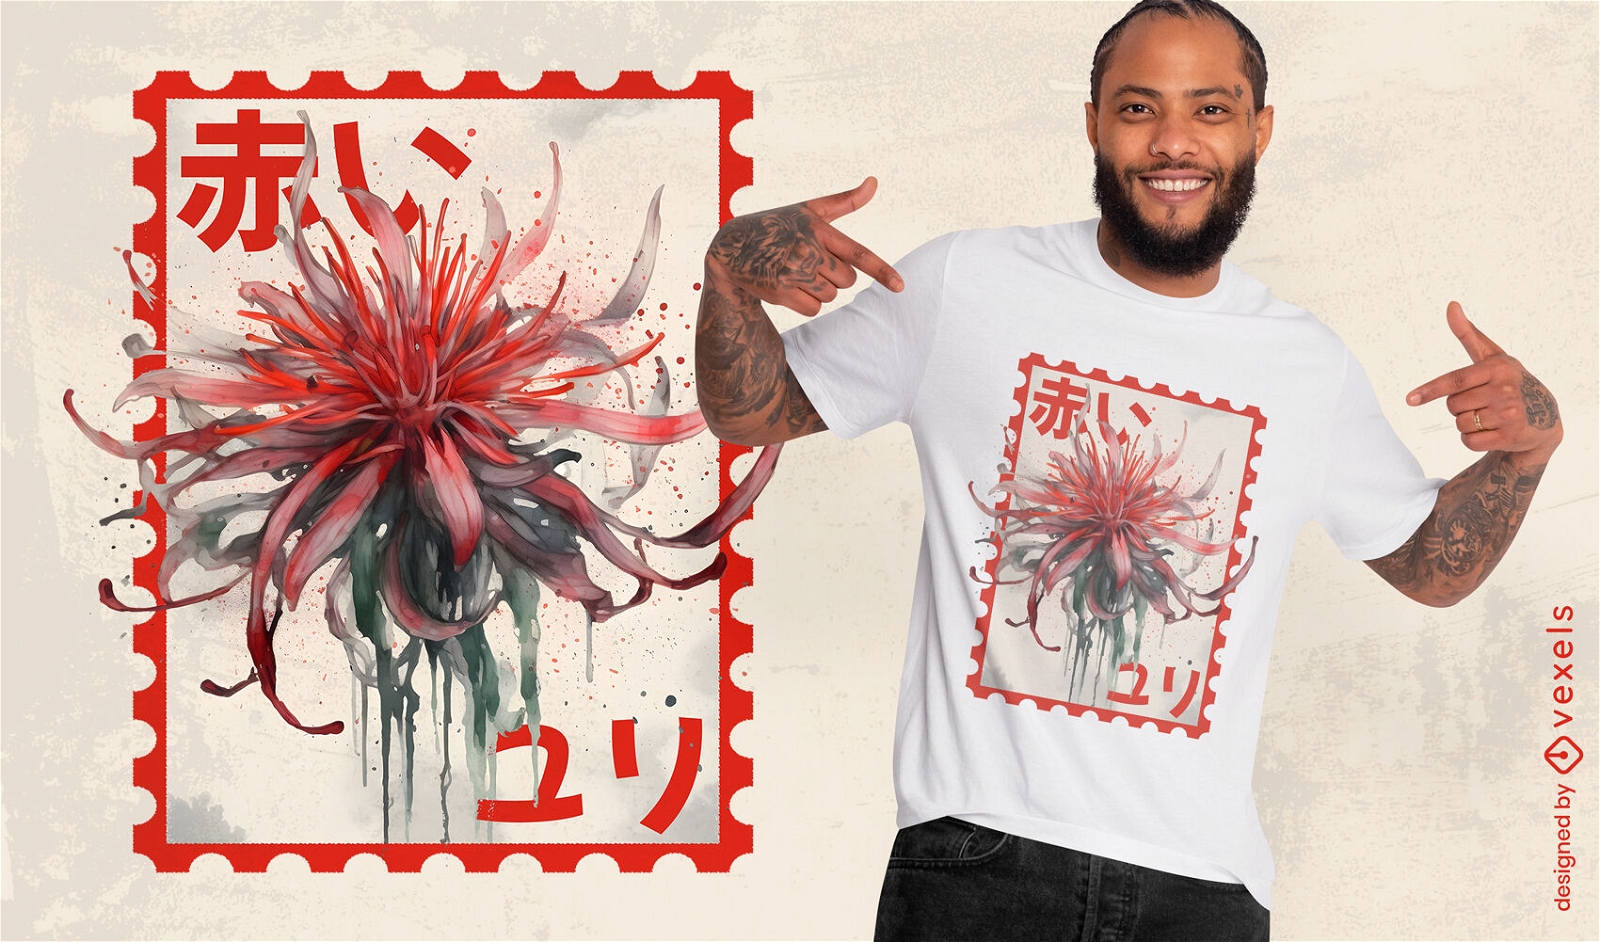 Japanisches Stempel-T-Shirt-Design mit roter Spinnenlilie